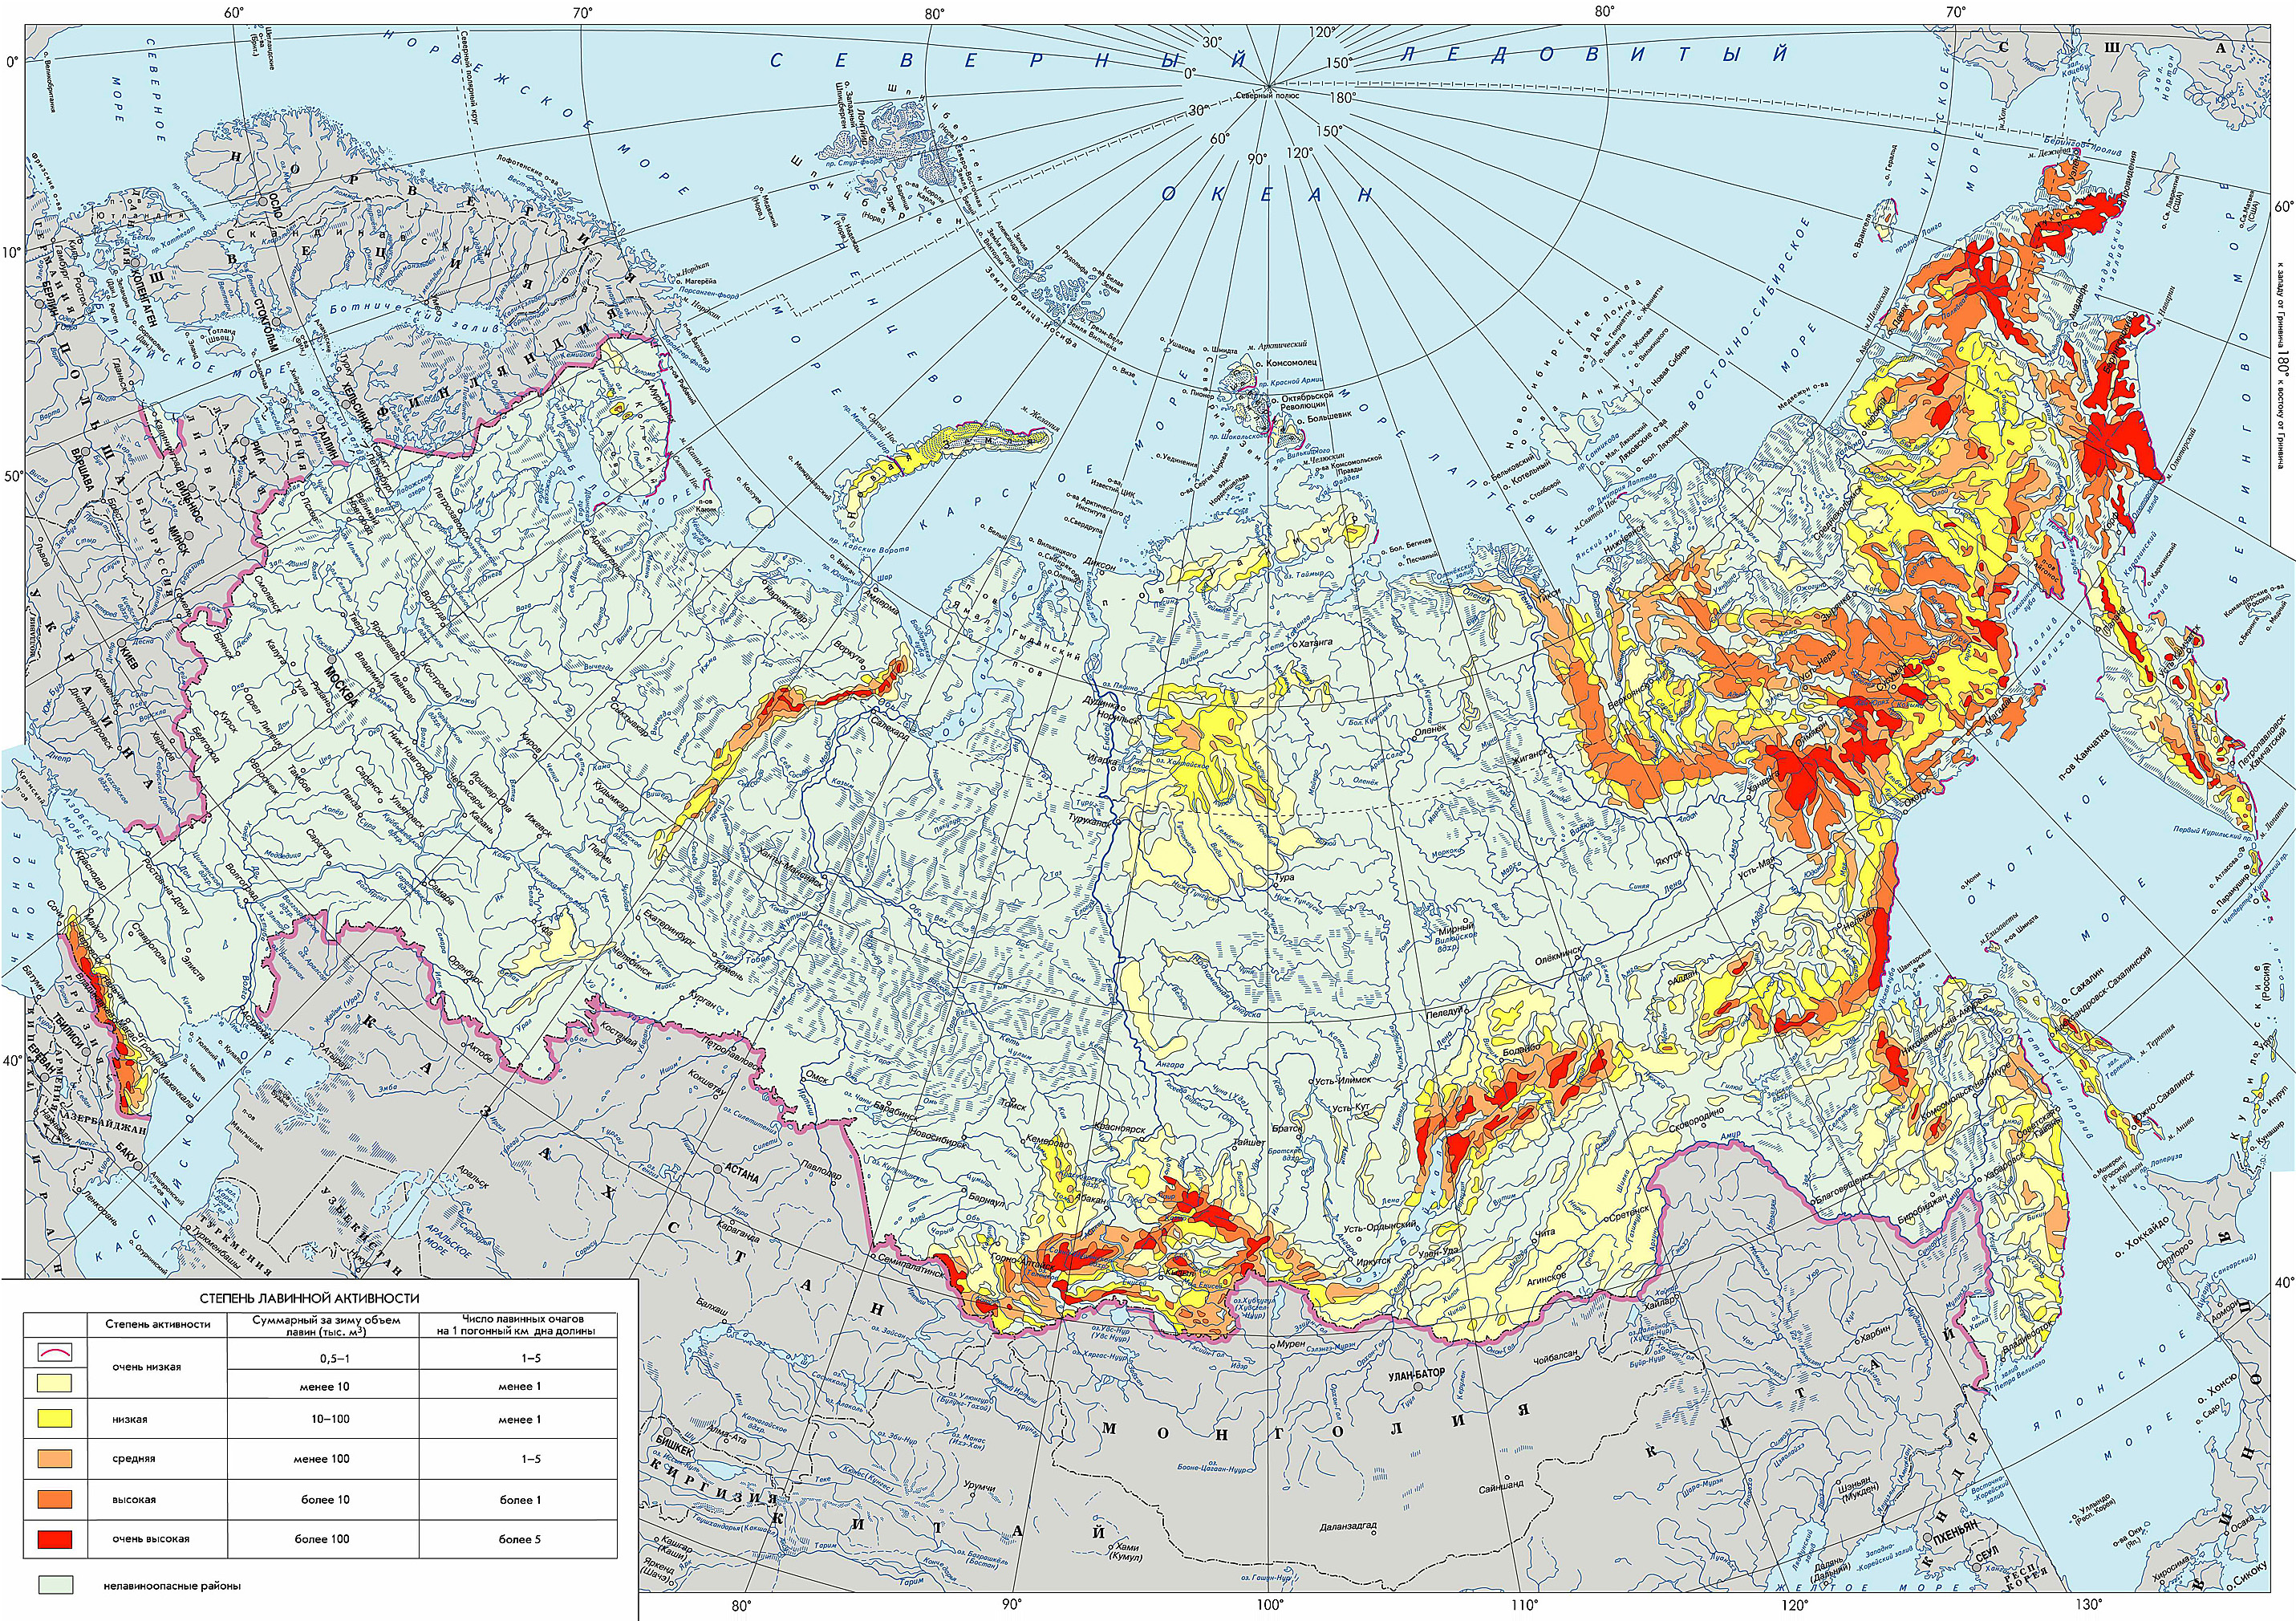 Степень лавинной опасности на территории России. Источник: geographyofrussia.com